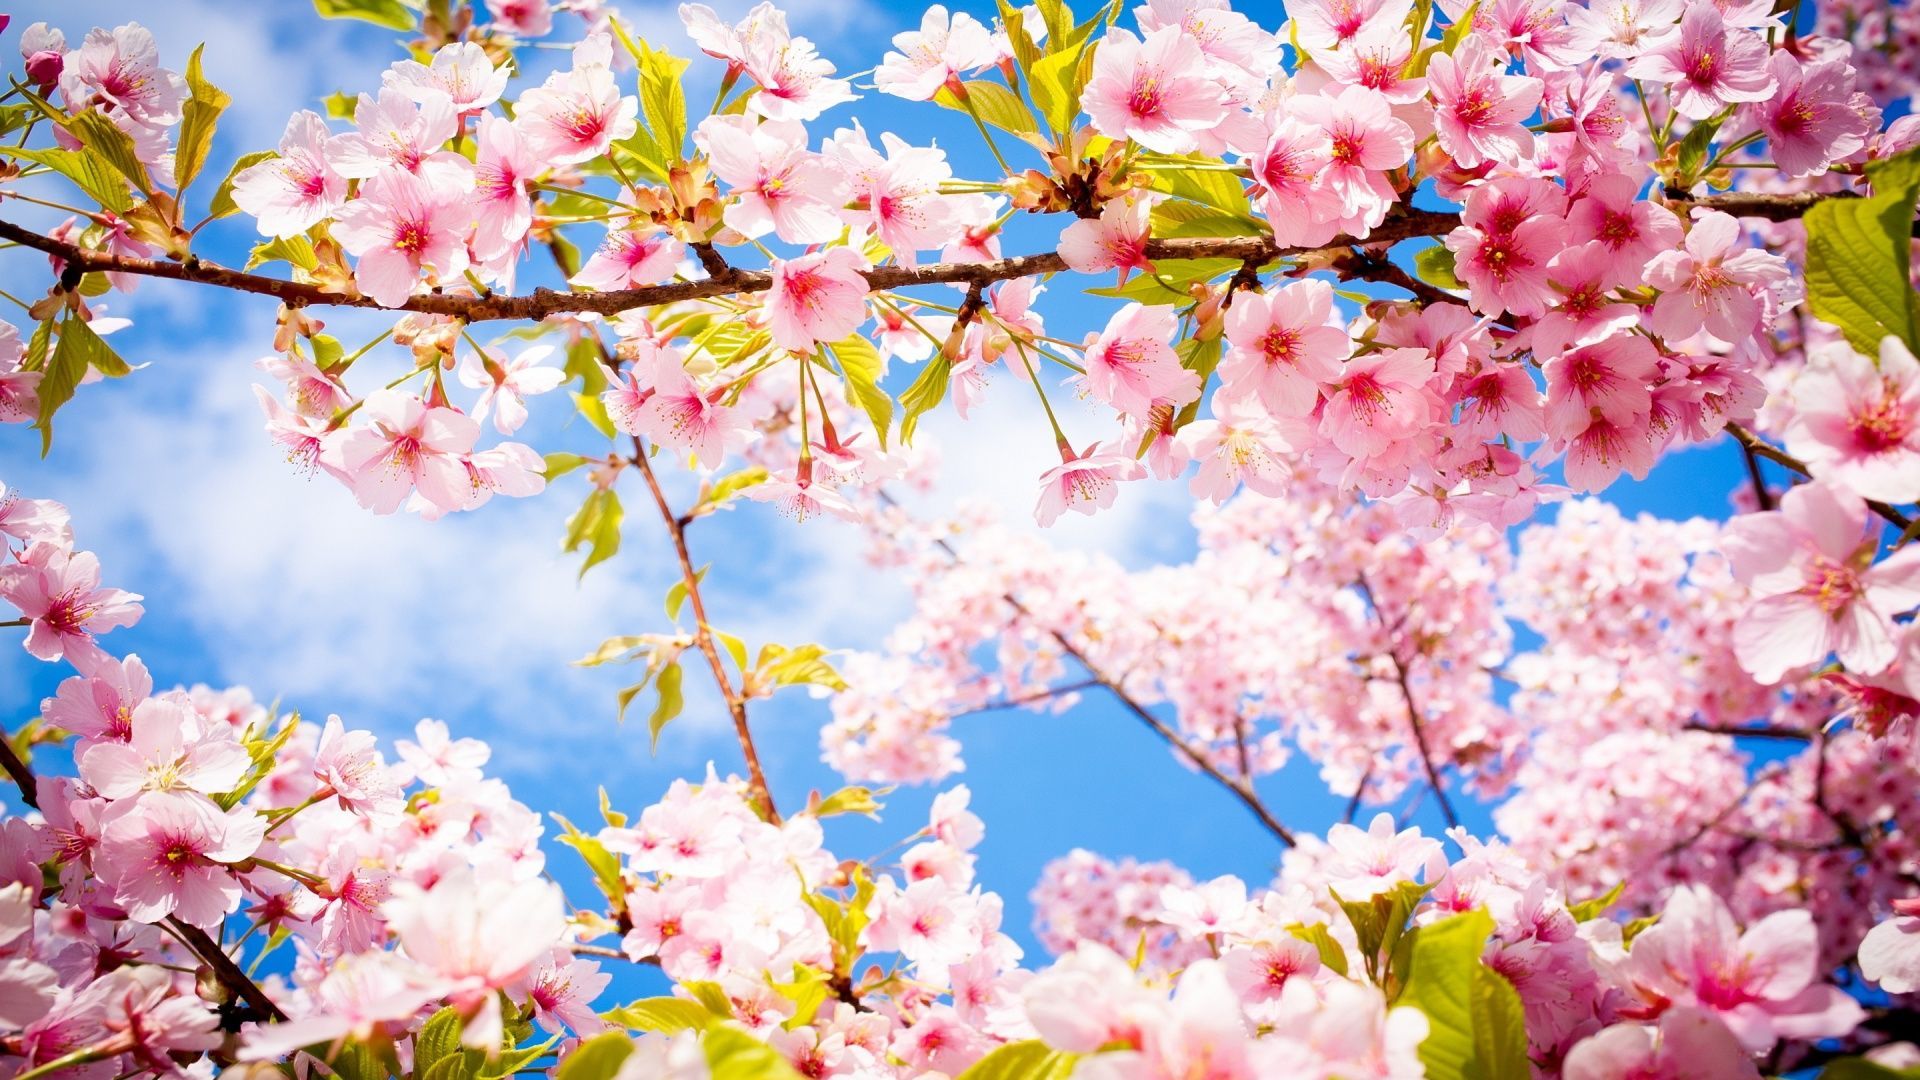 بارگیری با کیفیت ترین عکس شکوفه های صورتی درخت برای بک گراند دسکتاپ